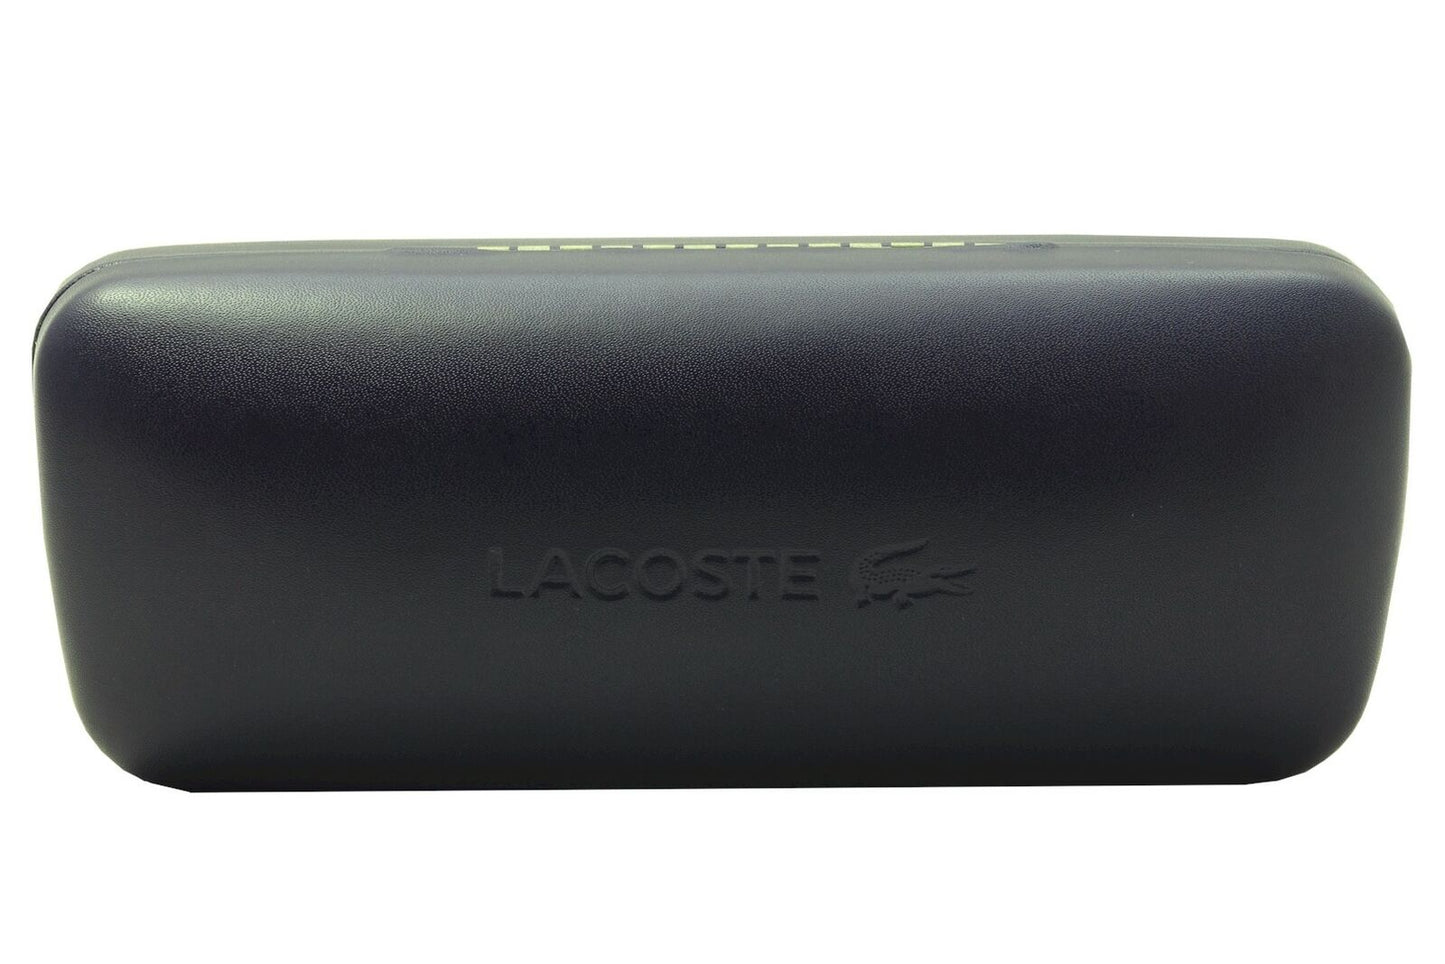 Lacoste L185S-615 60mm New Sunglasses